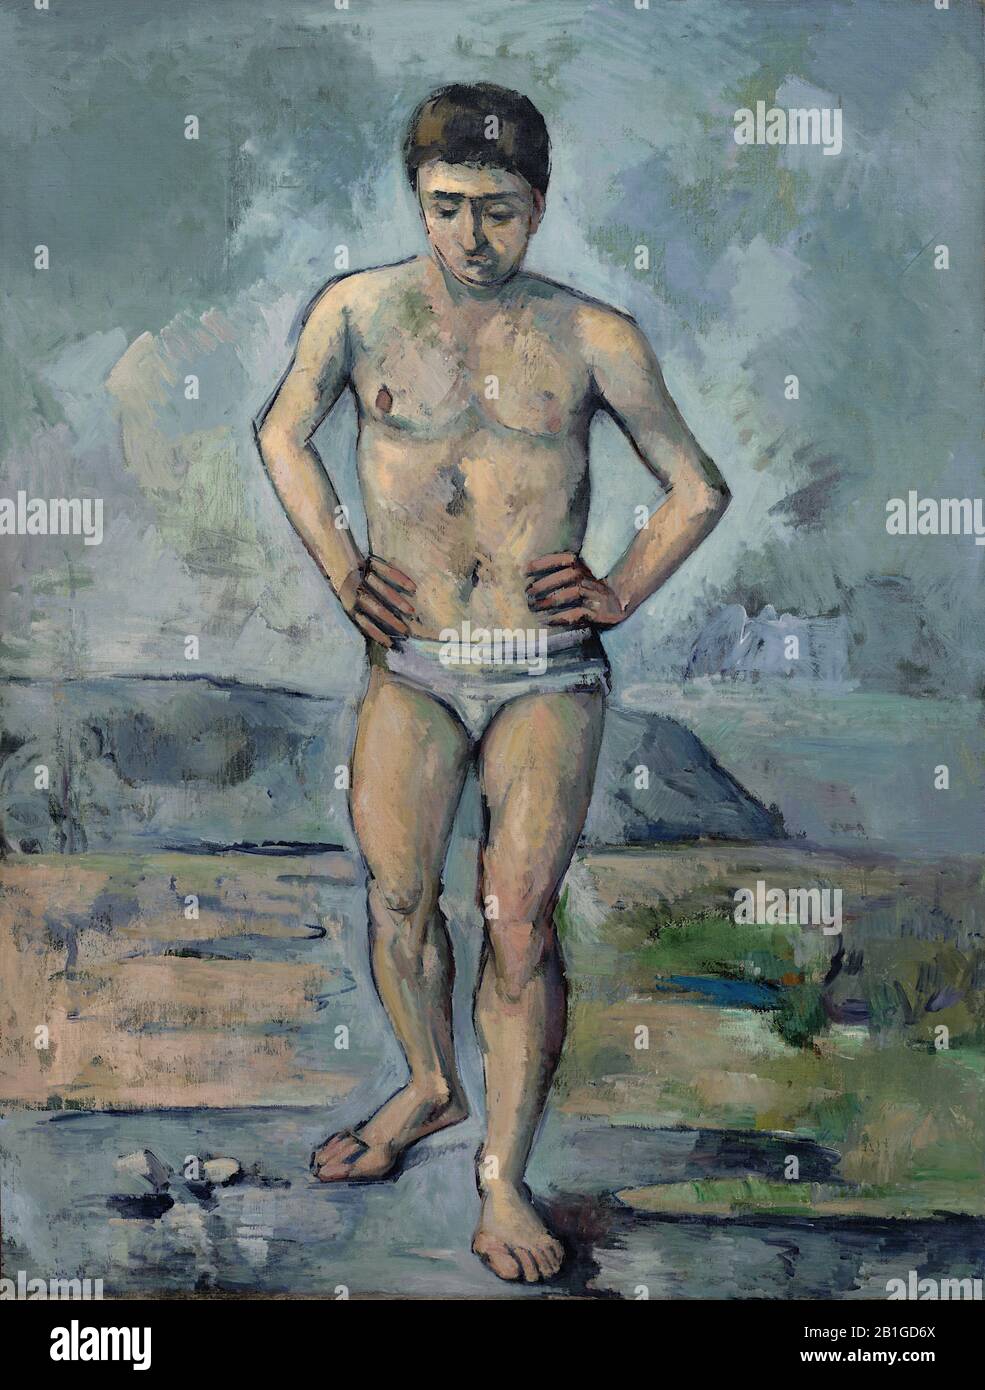 - Malerei des 19. Jahrhunderts von Paul Cézanne - Sehr hohe Auflösung und Qualitätsbild Stockfoto